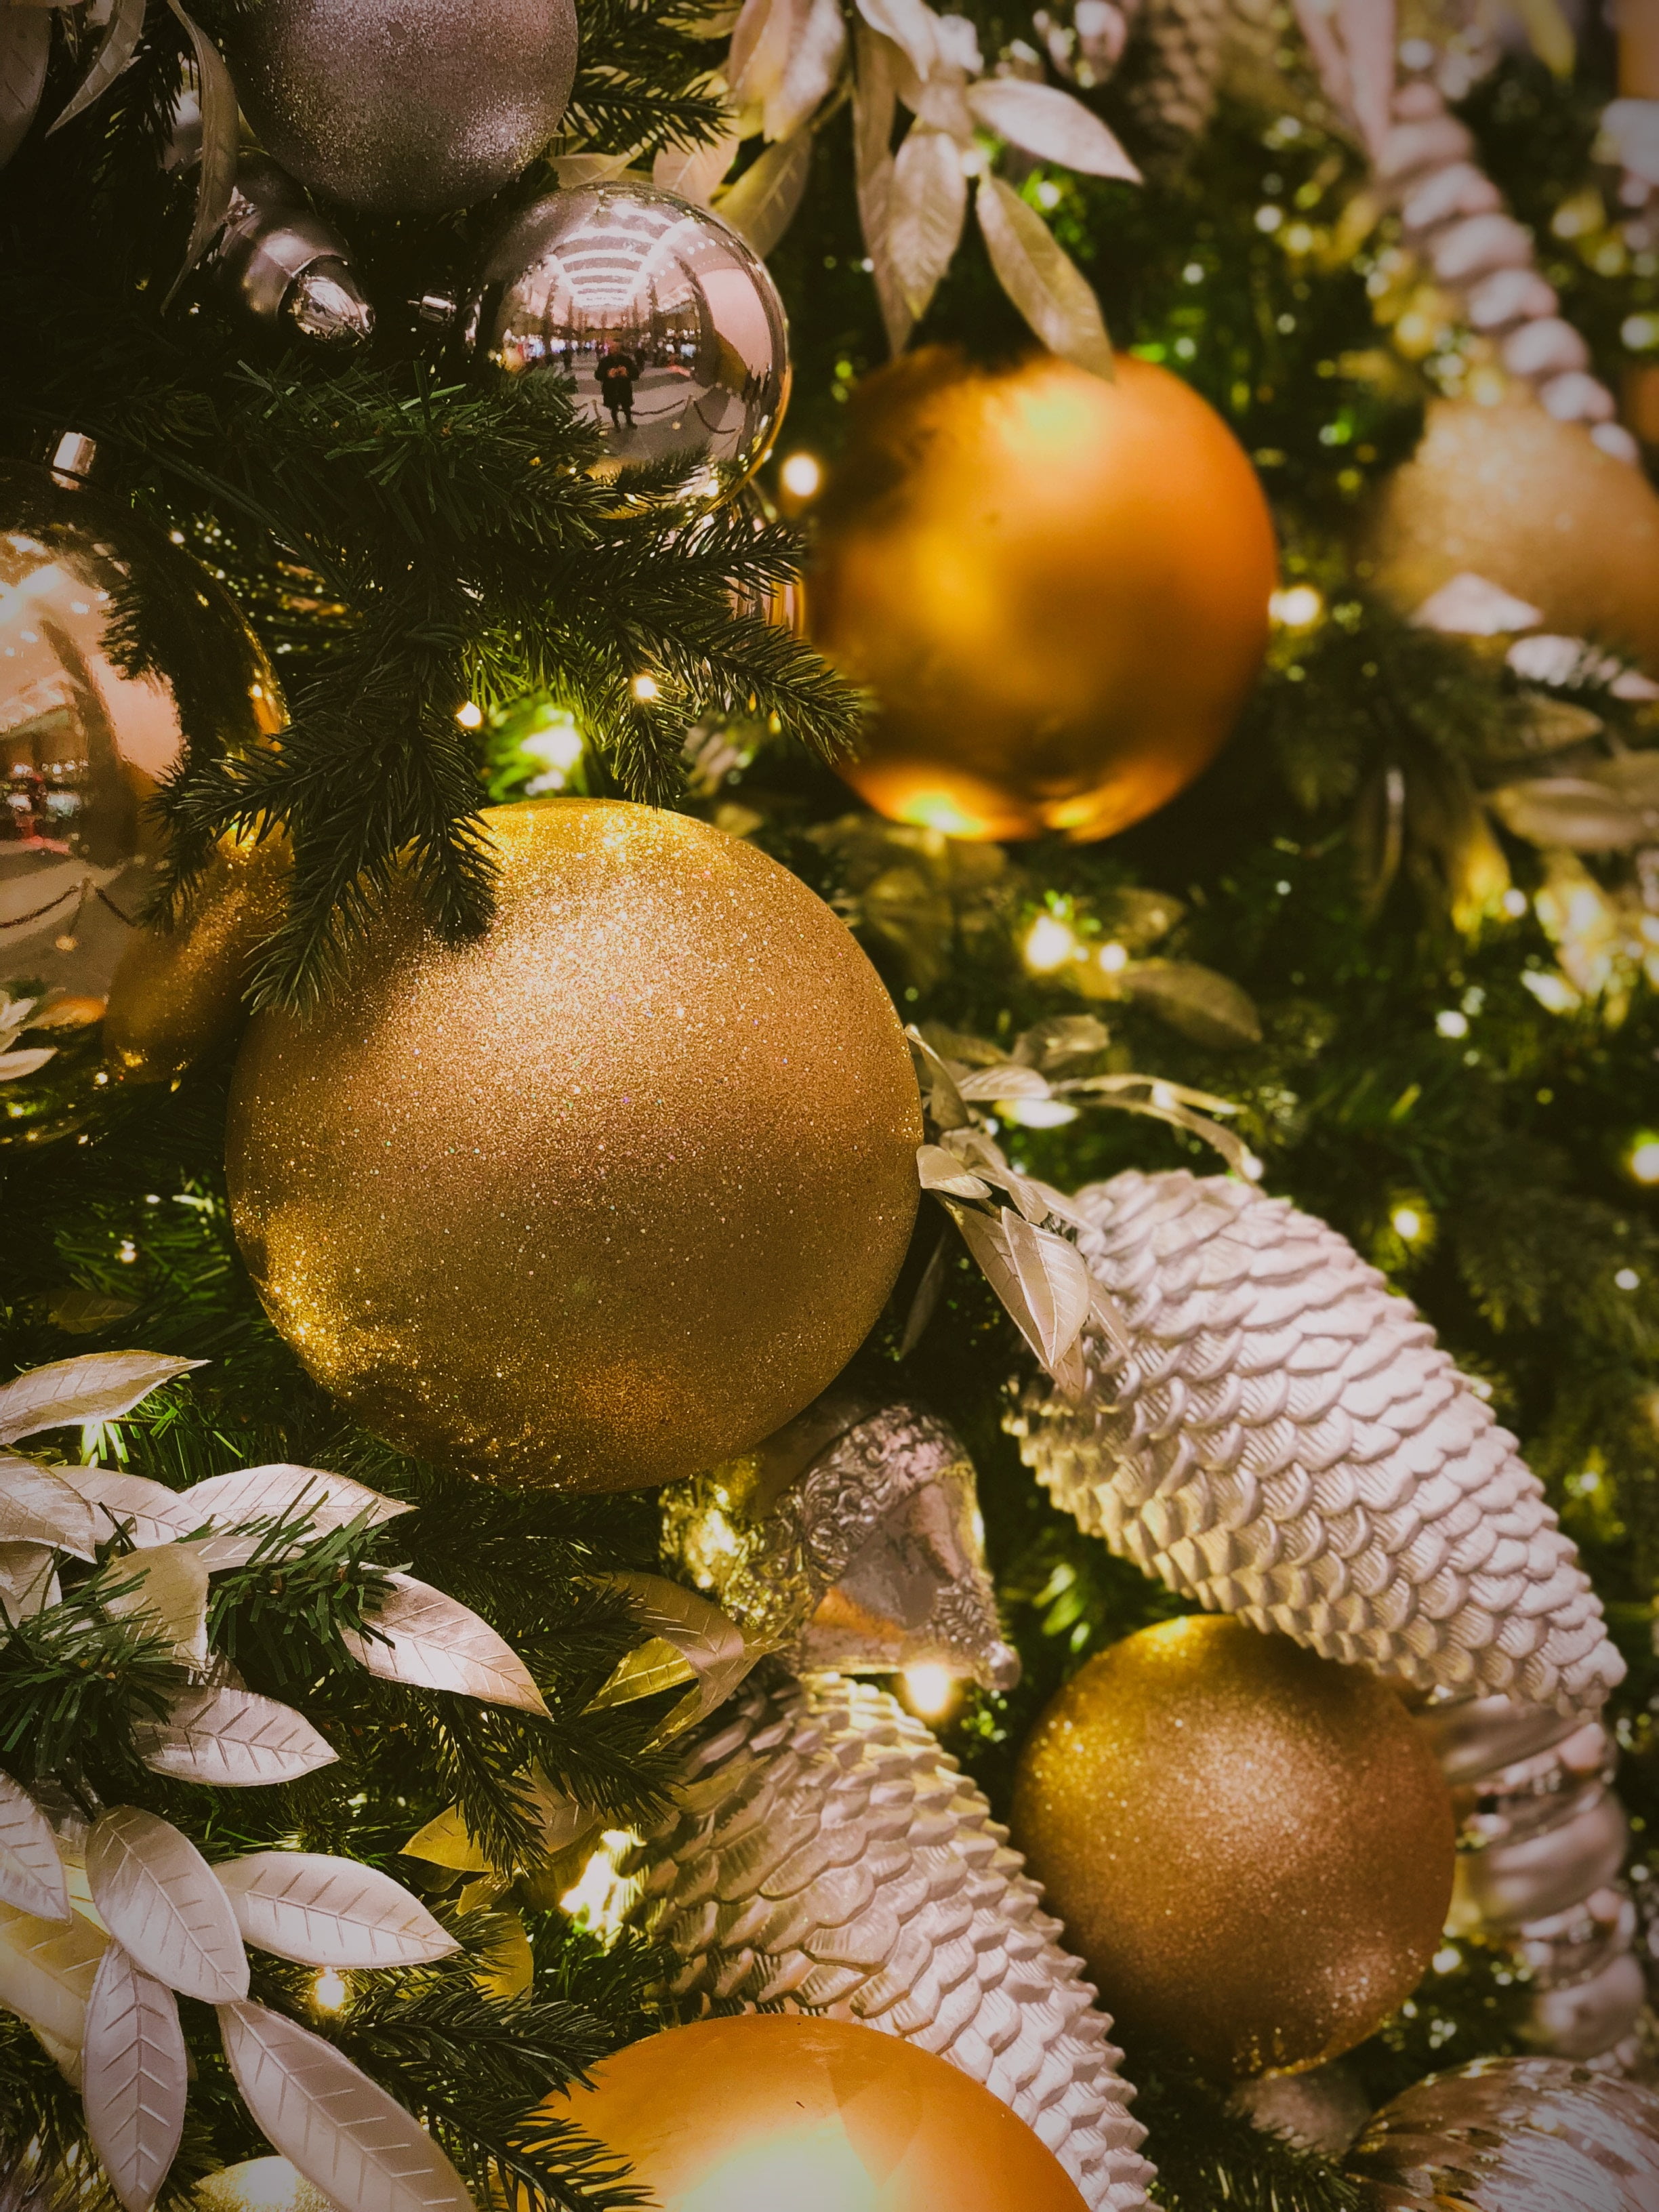 Đón một mùa Noel ấm áp và đầy màu sắc với những sản phẩm trang trí đẹp tuyệt vời. Hãy cùng xem hình ảnh để tìm những ý tưởng tuyệt vời cho bữa tiệc cuối năm của bạn. ????????